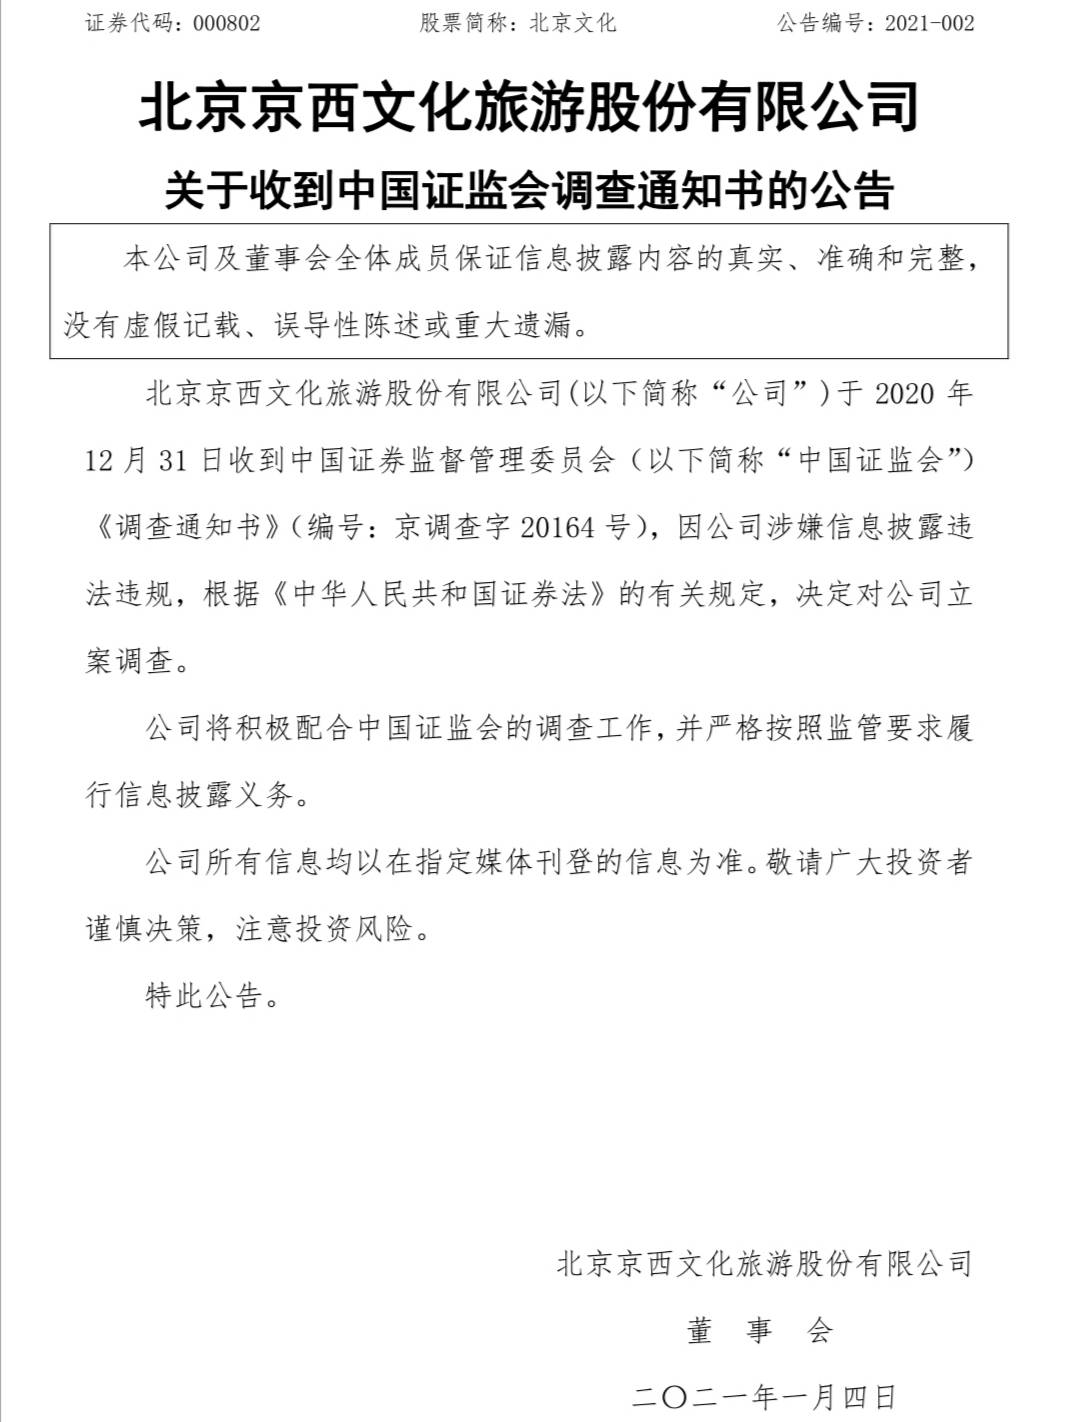 北京文化因涉嫌信息披露违法违规被立案调查 